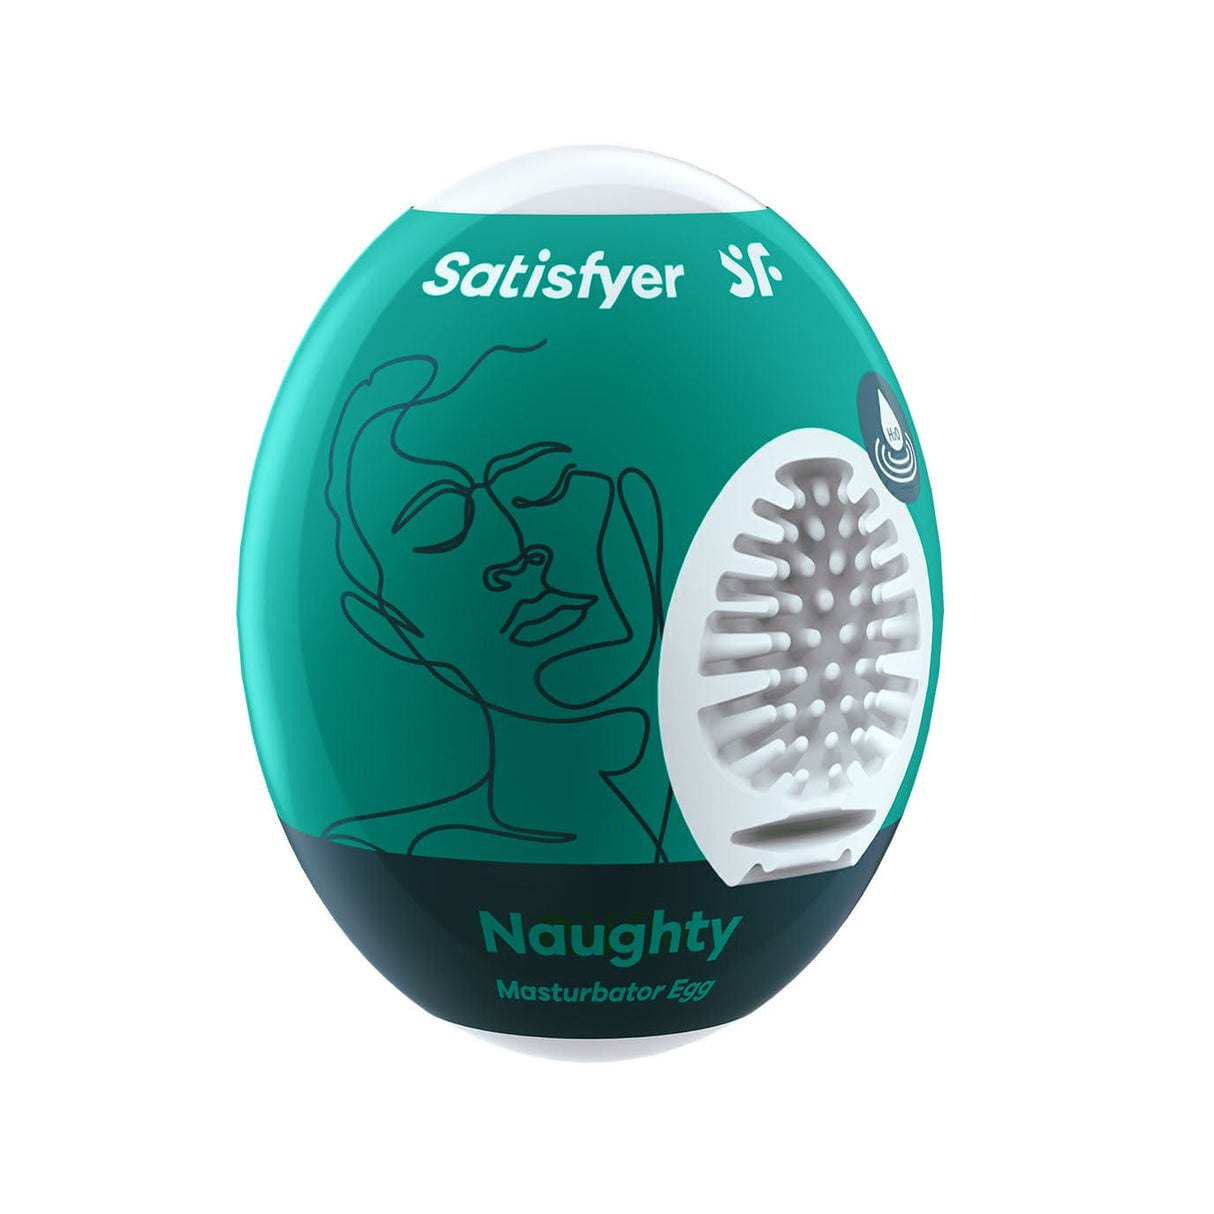 Satisfyer - Crunchy Masturbator Egg (Green)    Masturbator Egg (Non Vibration)